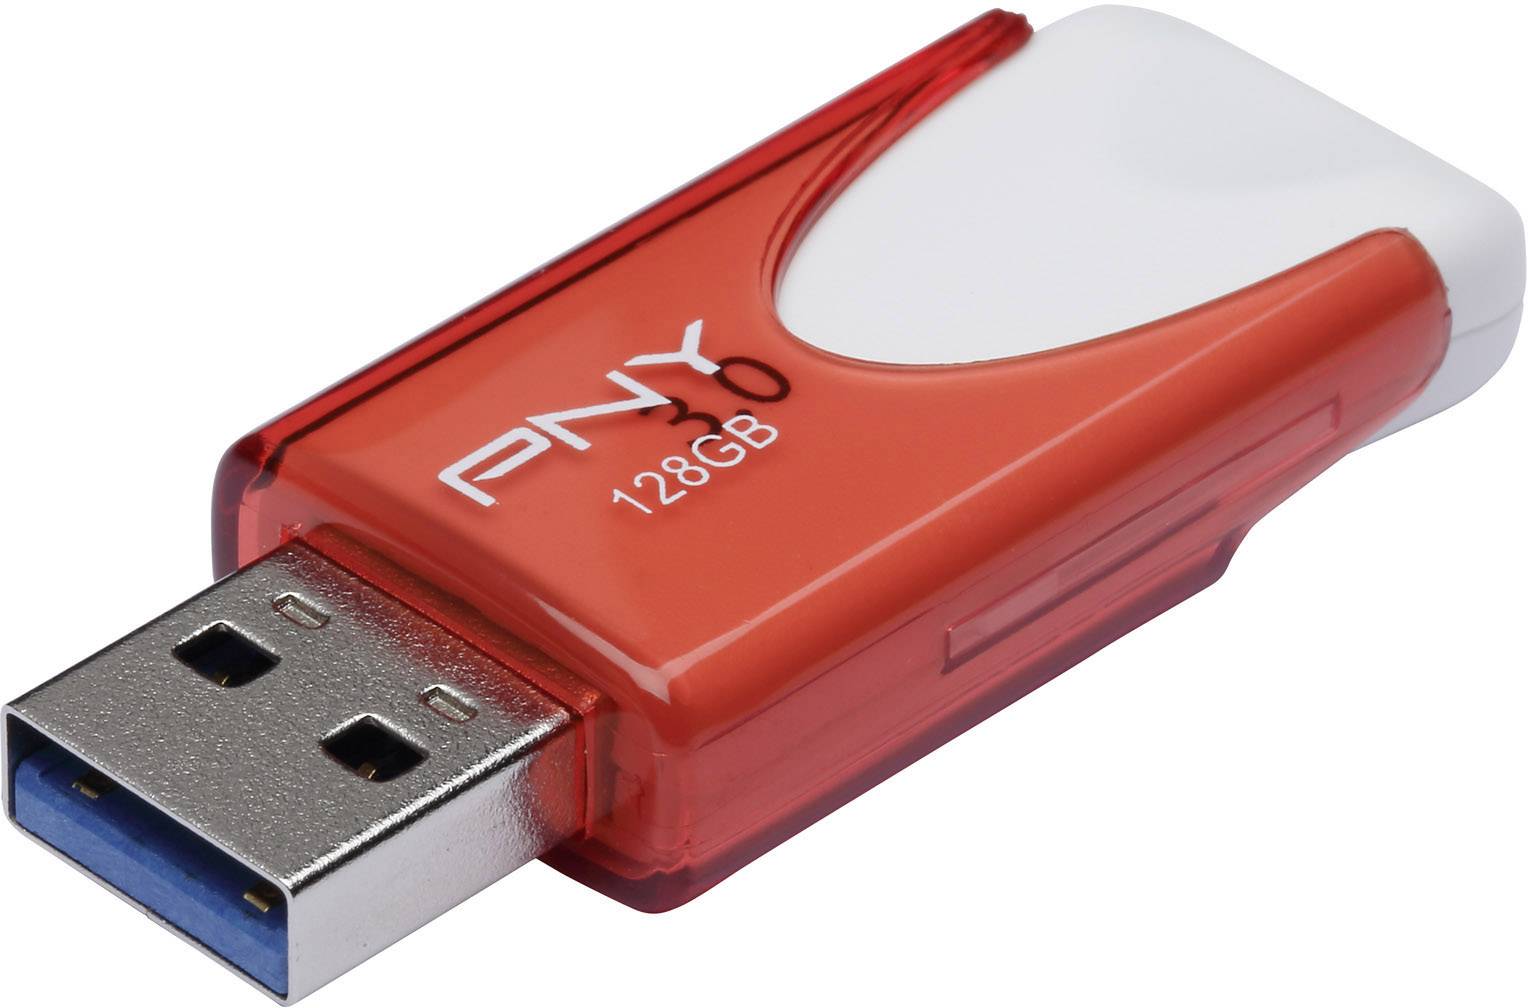 PNY Attaché 4 stick 128 GB Red FD128ATT430-EF USB 3.2 1st Gen (USB 3.0) | Conrad.com